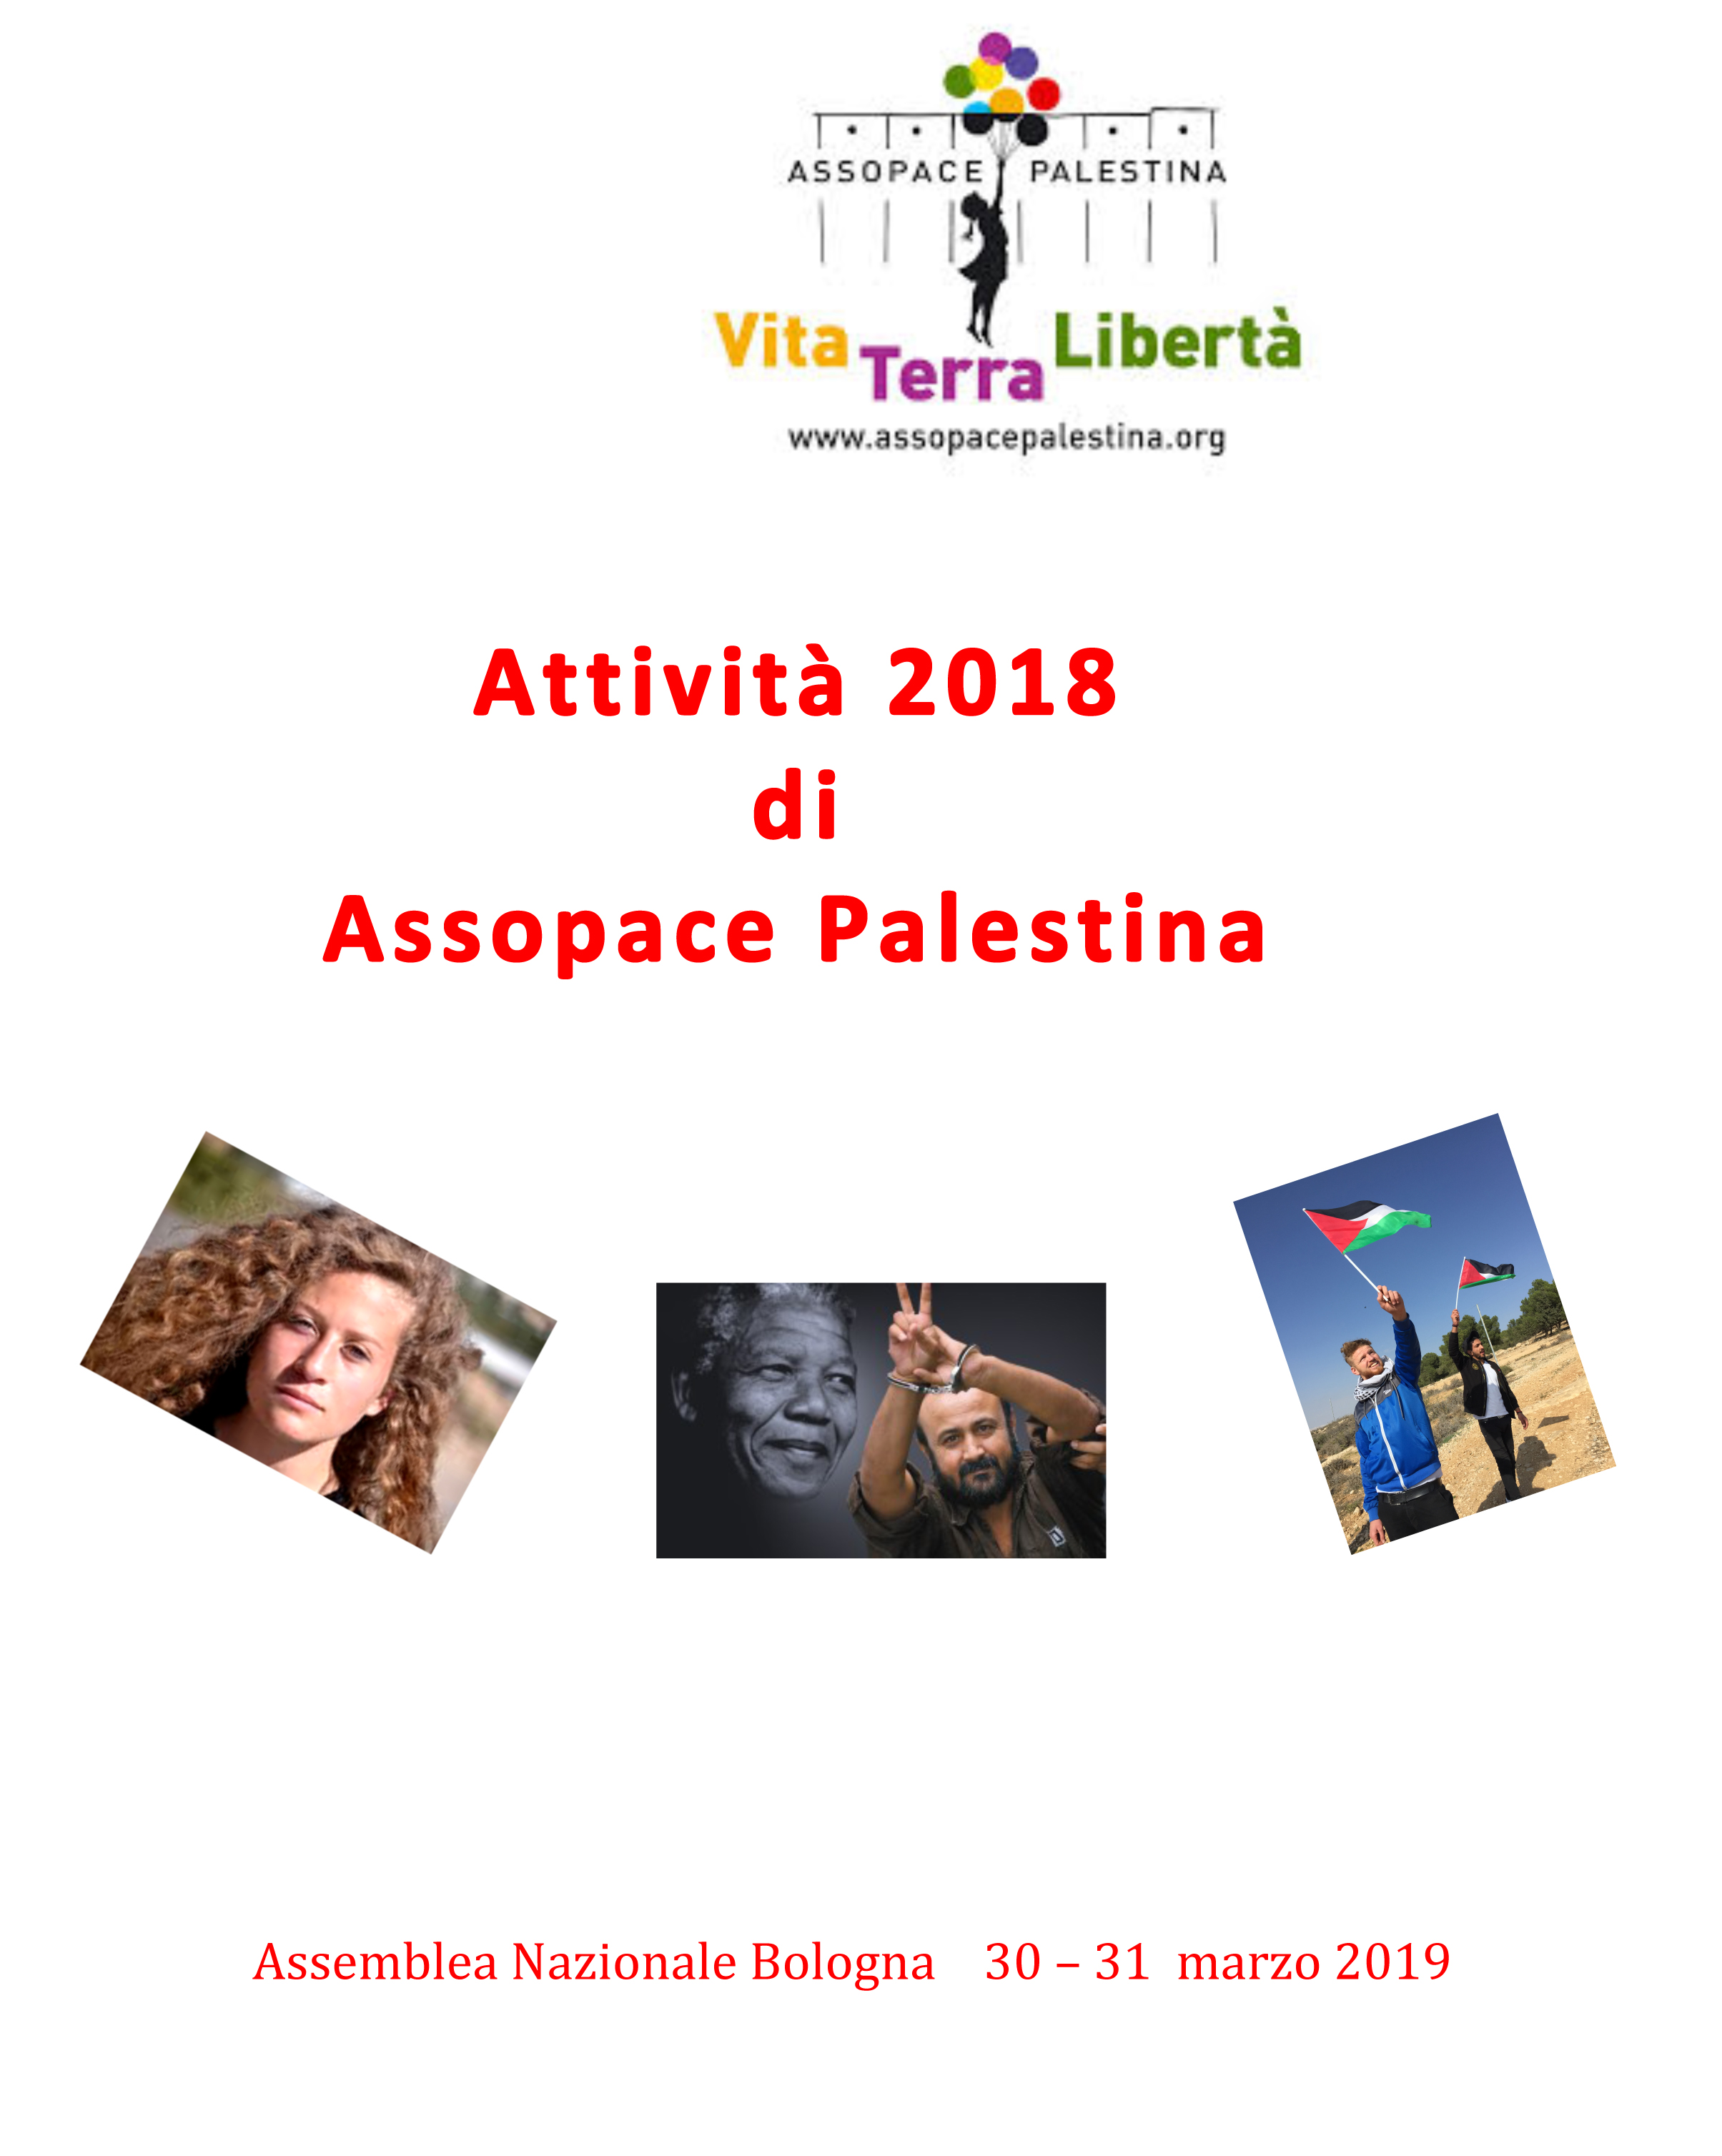 Attività di AssopacePalestina nel 2018.